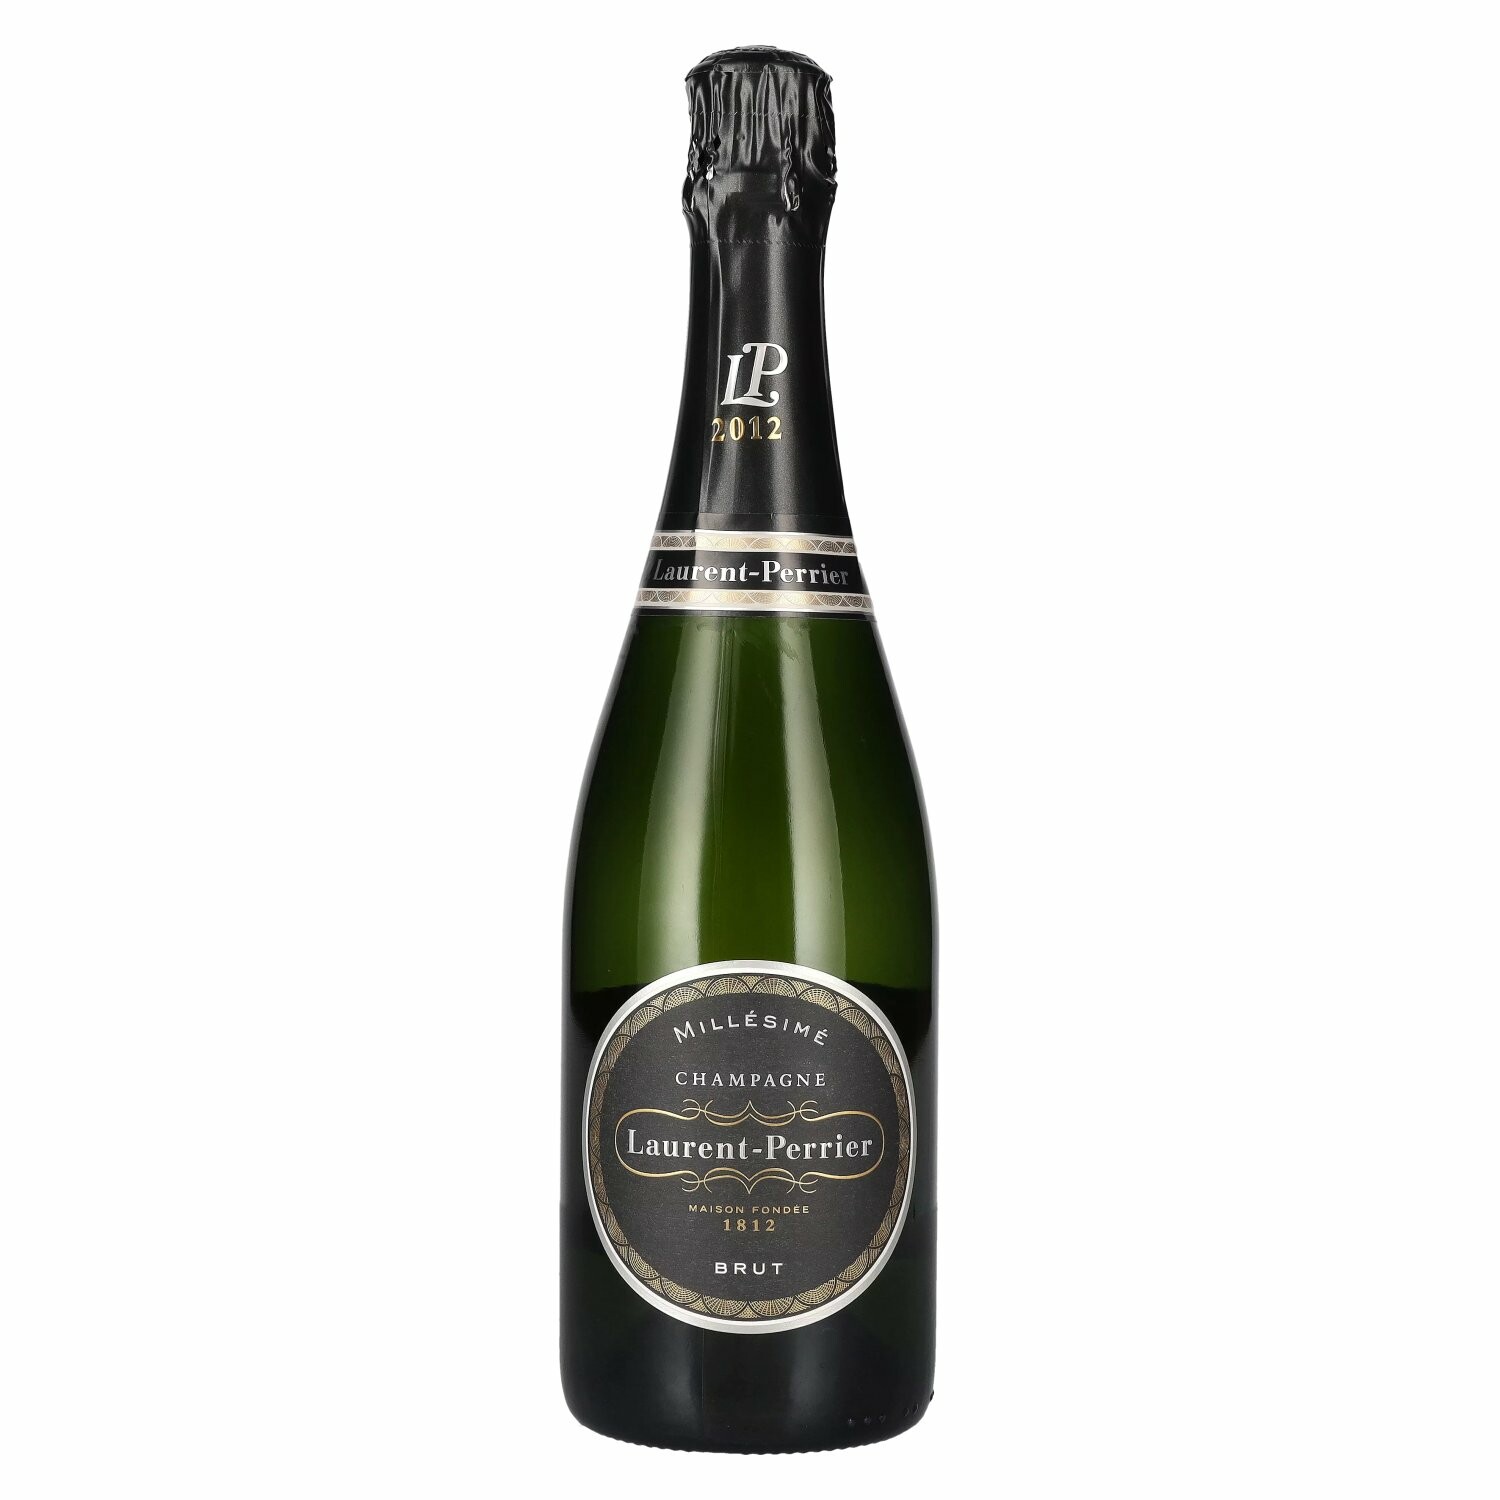 Laurent Perrier Champagne MILLÉSIMÉ Brut 2012 12% Vol. 0,75l